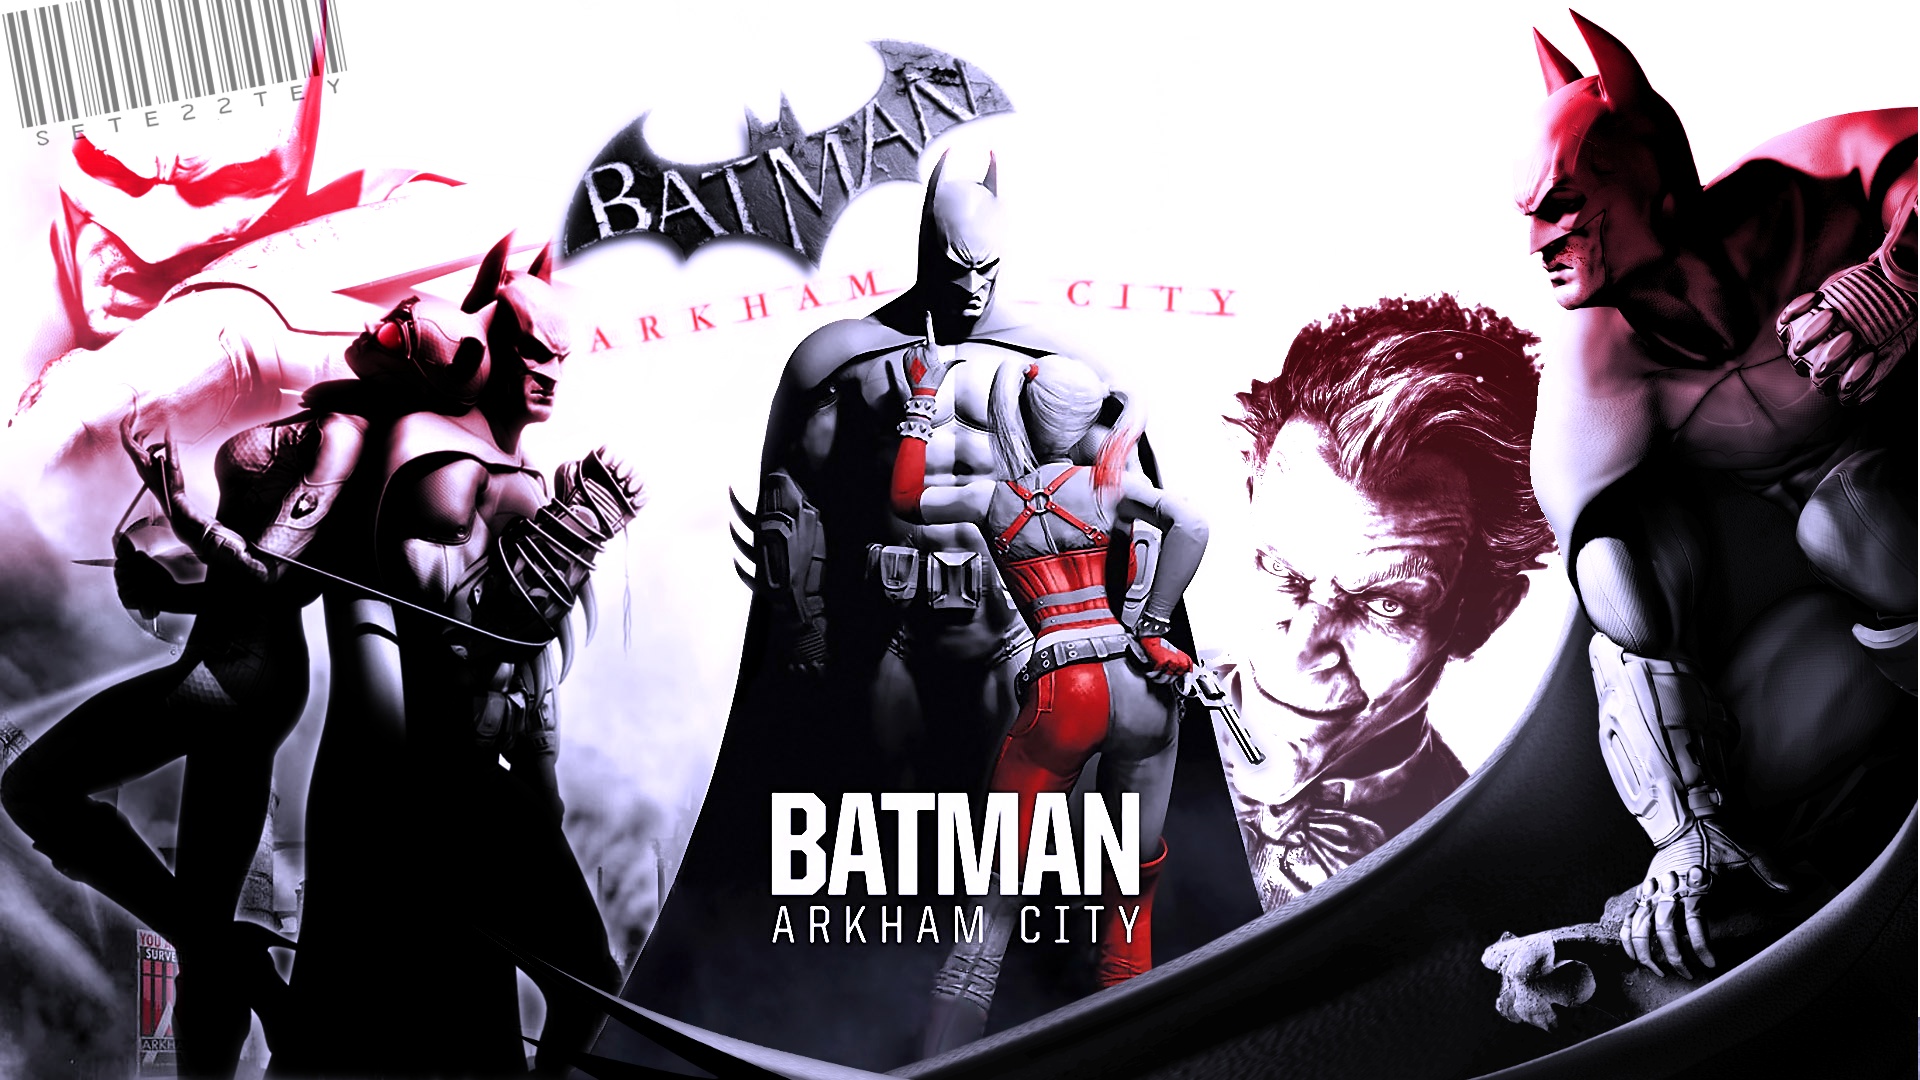 fond d'écran batman arkham city,personnage fictif,super héros,homme chauve souris,film,conception graphique